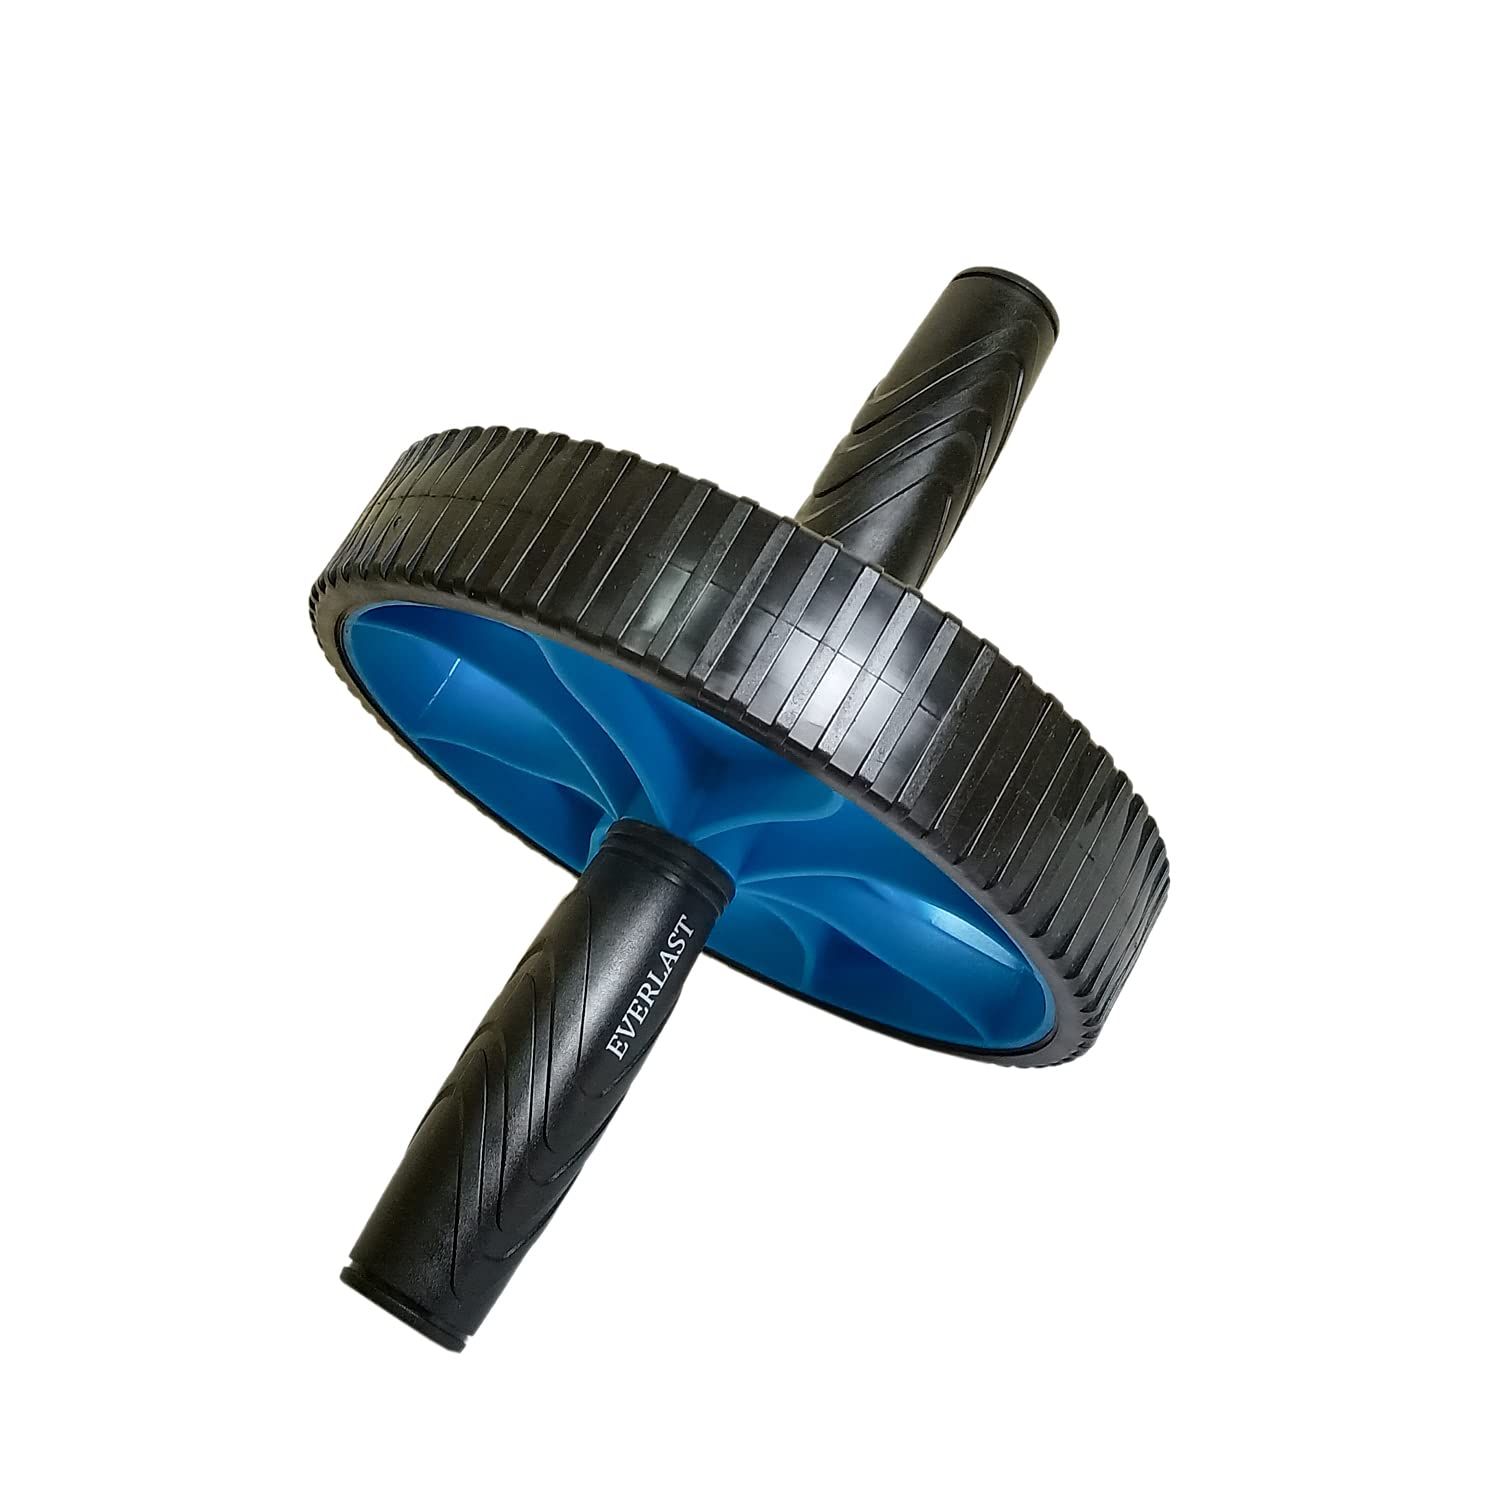 Everlast ELDOM050 Exercise Whell Roller , Blue - Best Price online Prokicksports.com